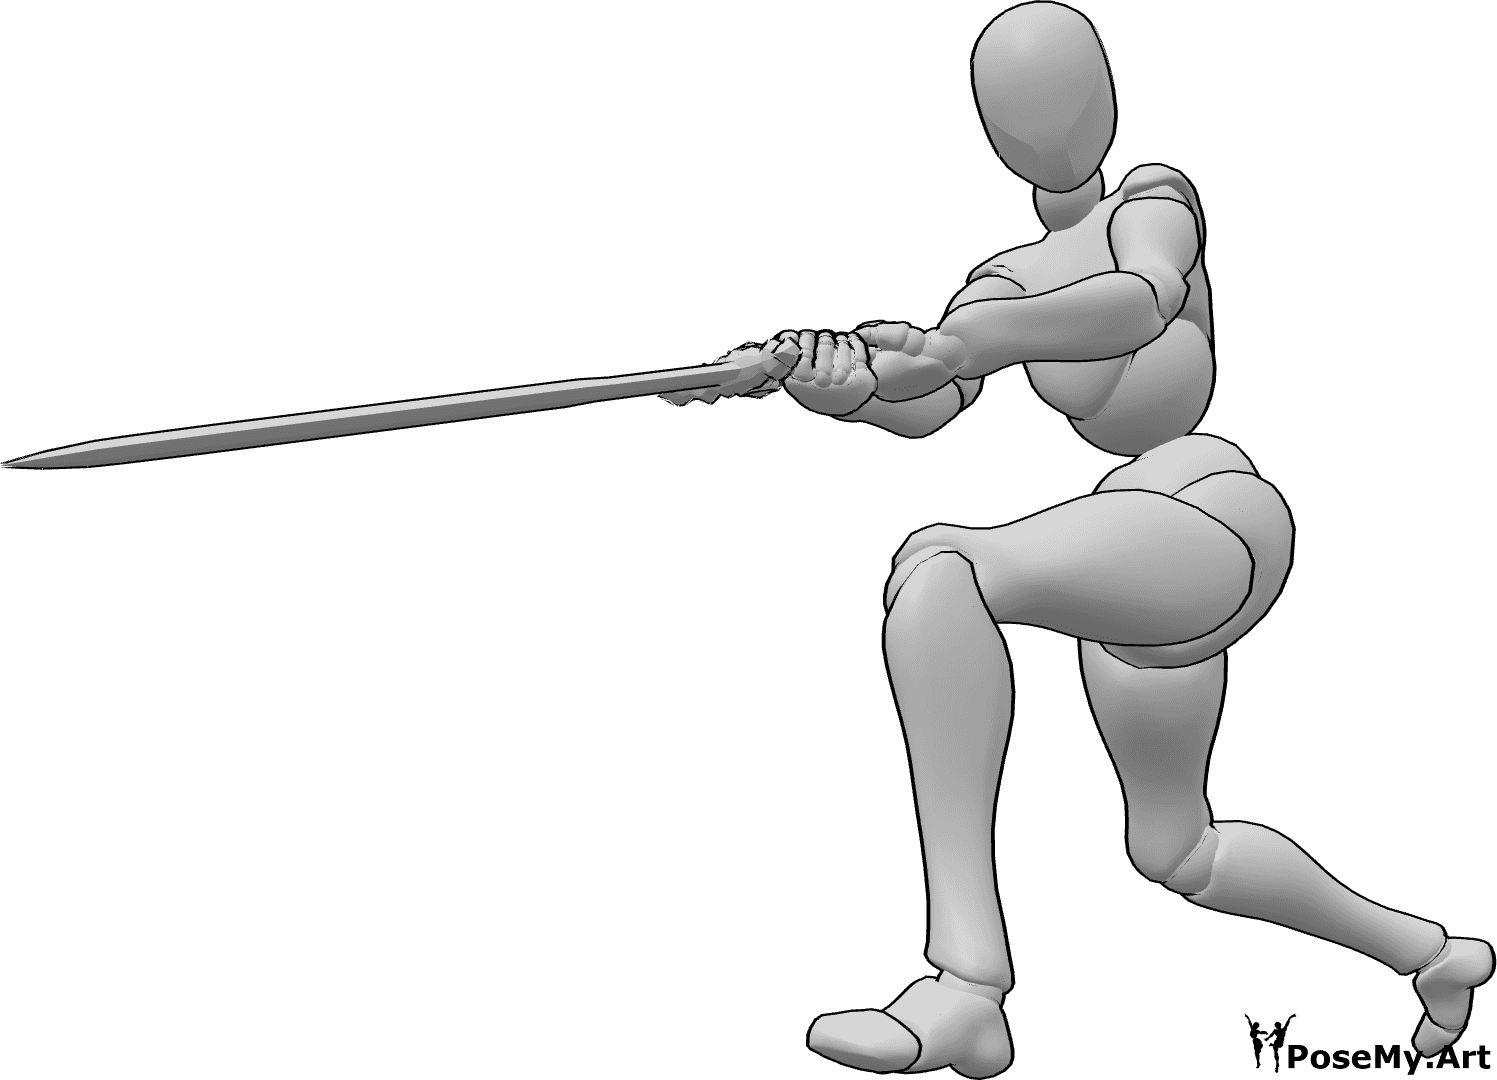 Référence des poses- Femme posant l'épée - Femme tenant l'épée à deux mains, regardant vers la gauche, pose de l'épée féminine en train de se balancer.